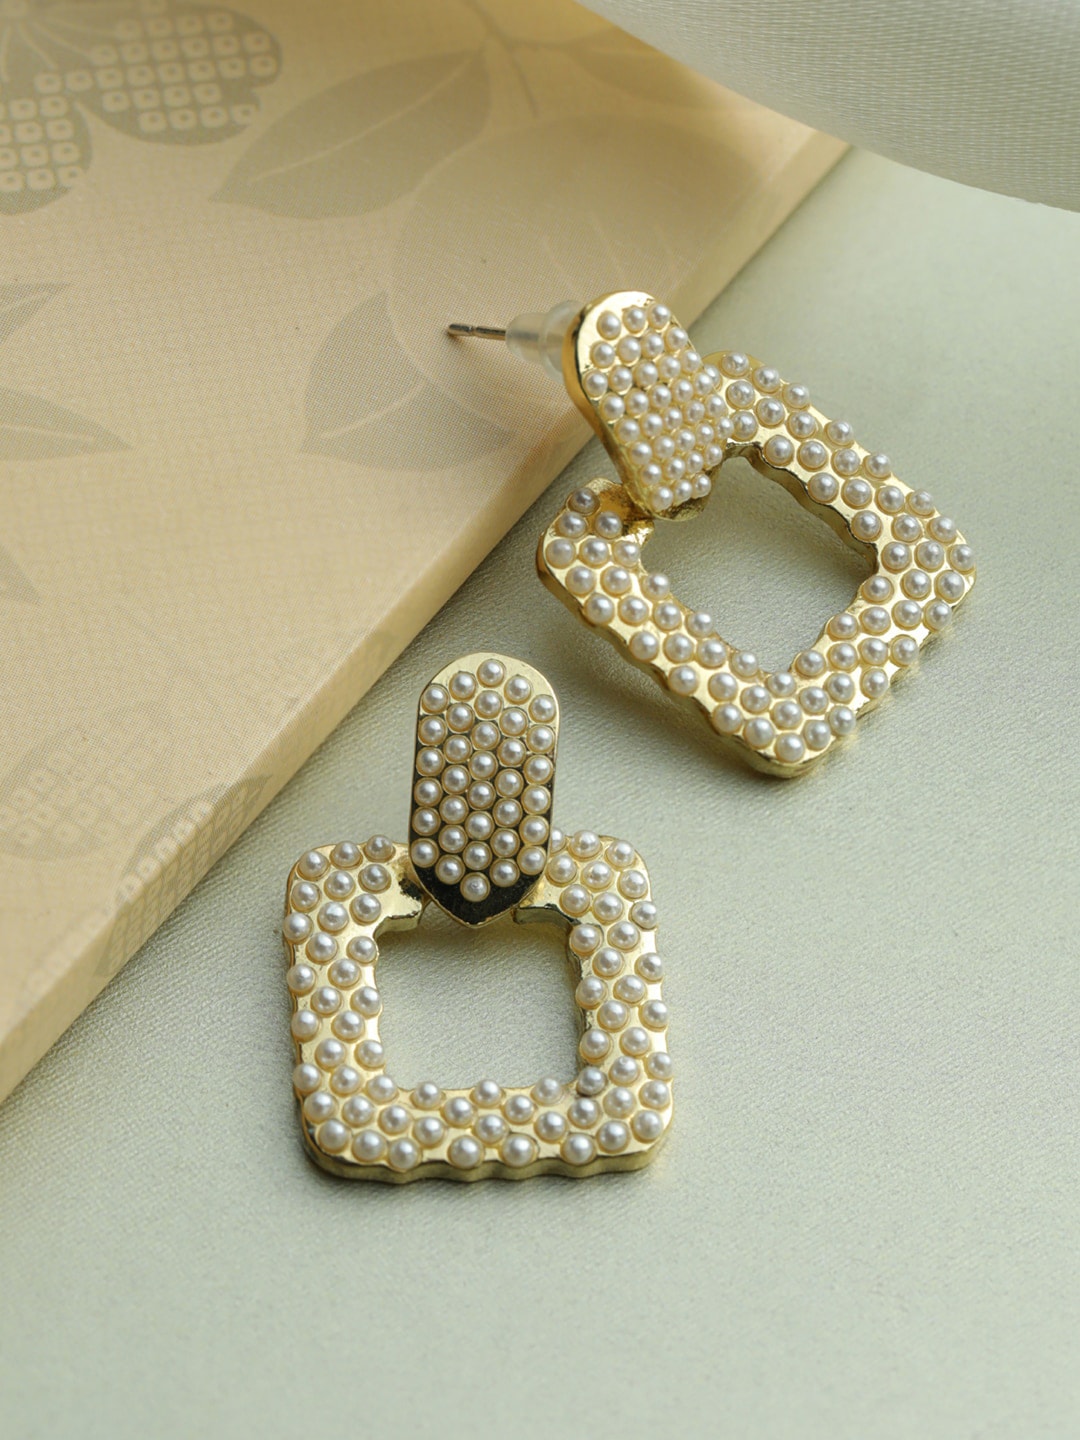 Priyaasi Gold-Toned Geometric Drop Earrings Price in India